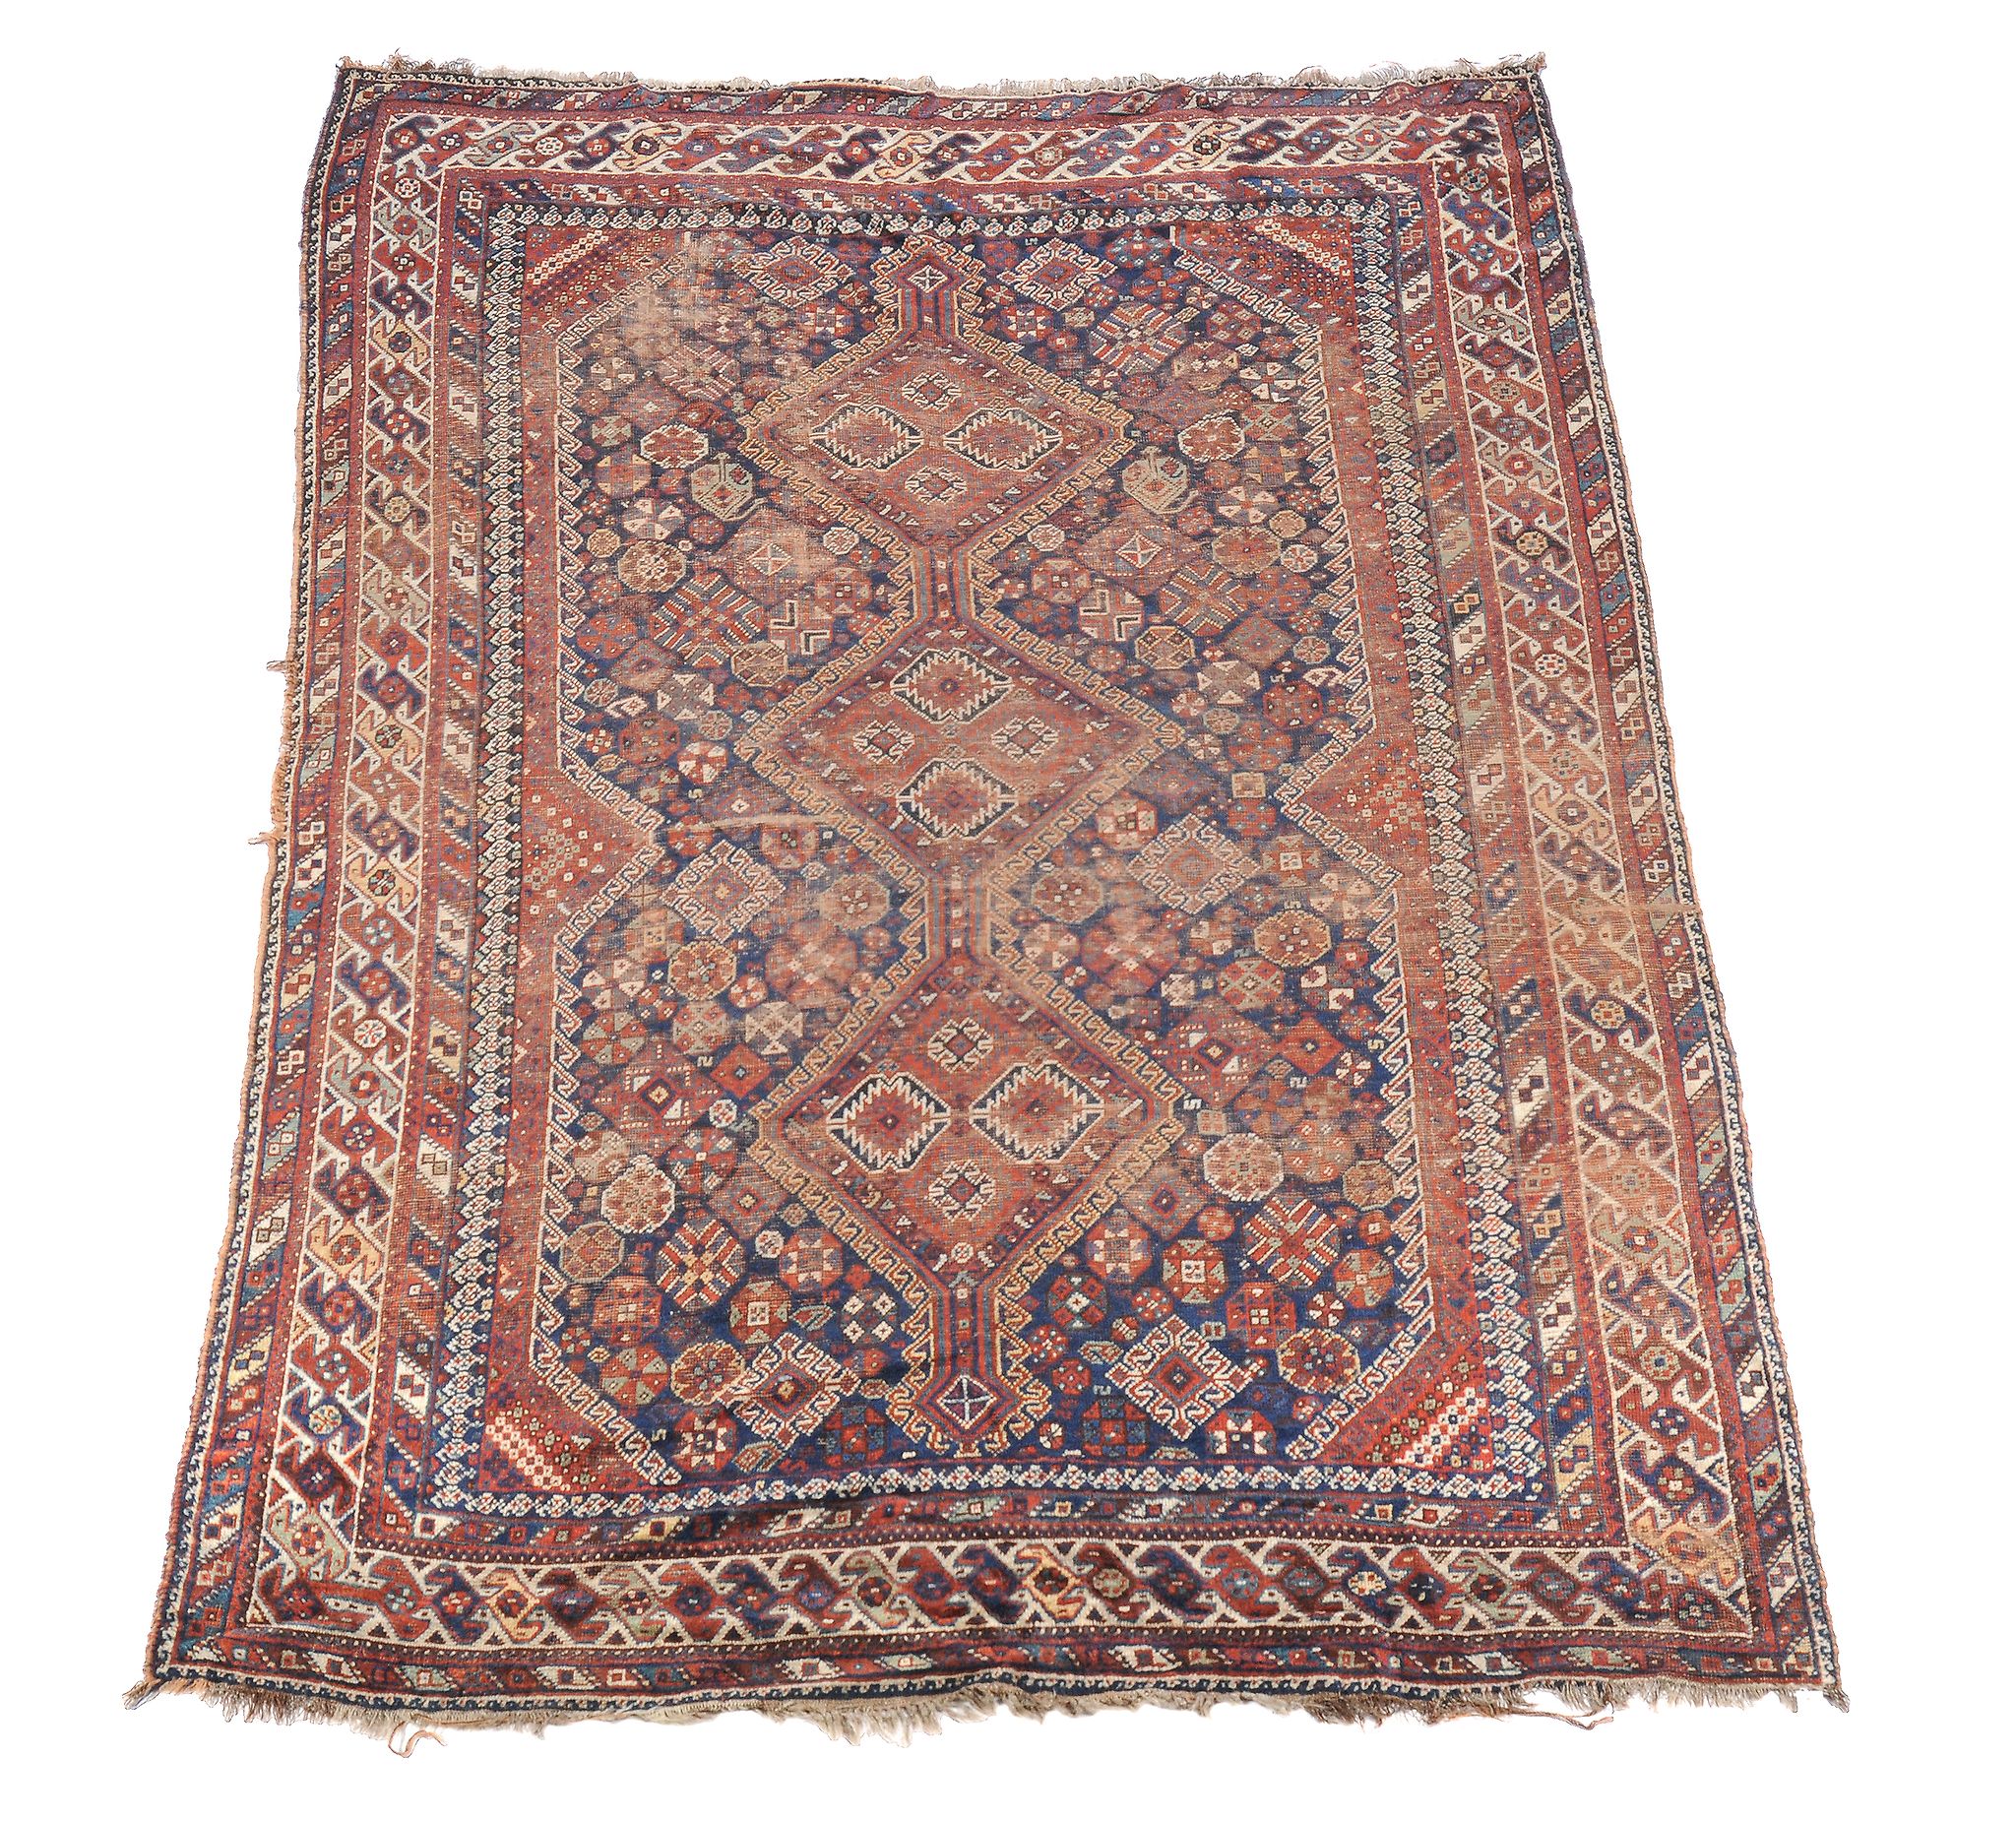 A Quashqai carpet , approximately 212cm x 315cm